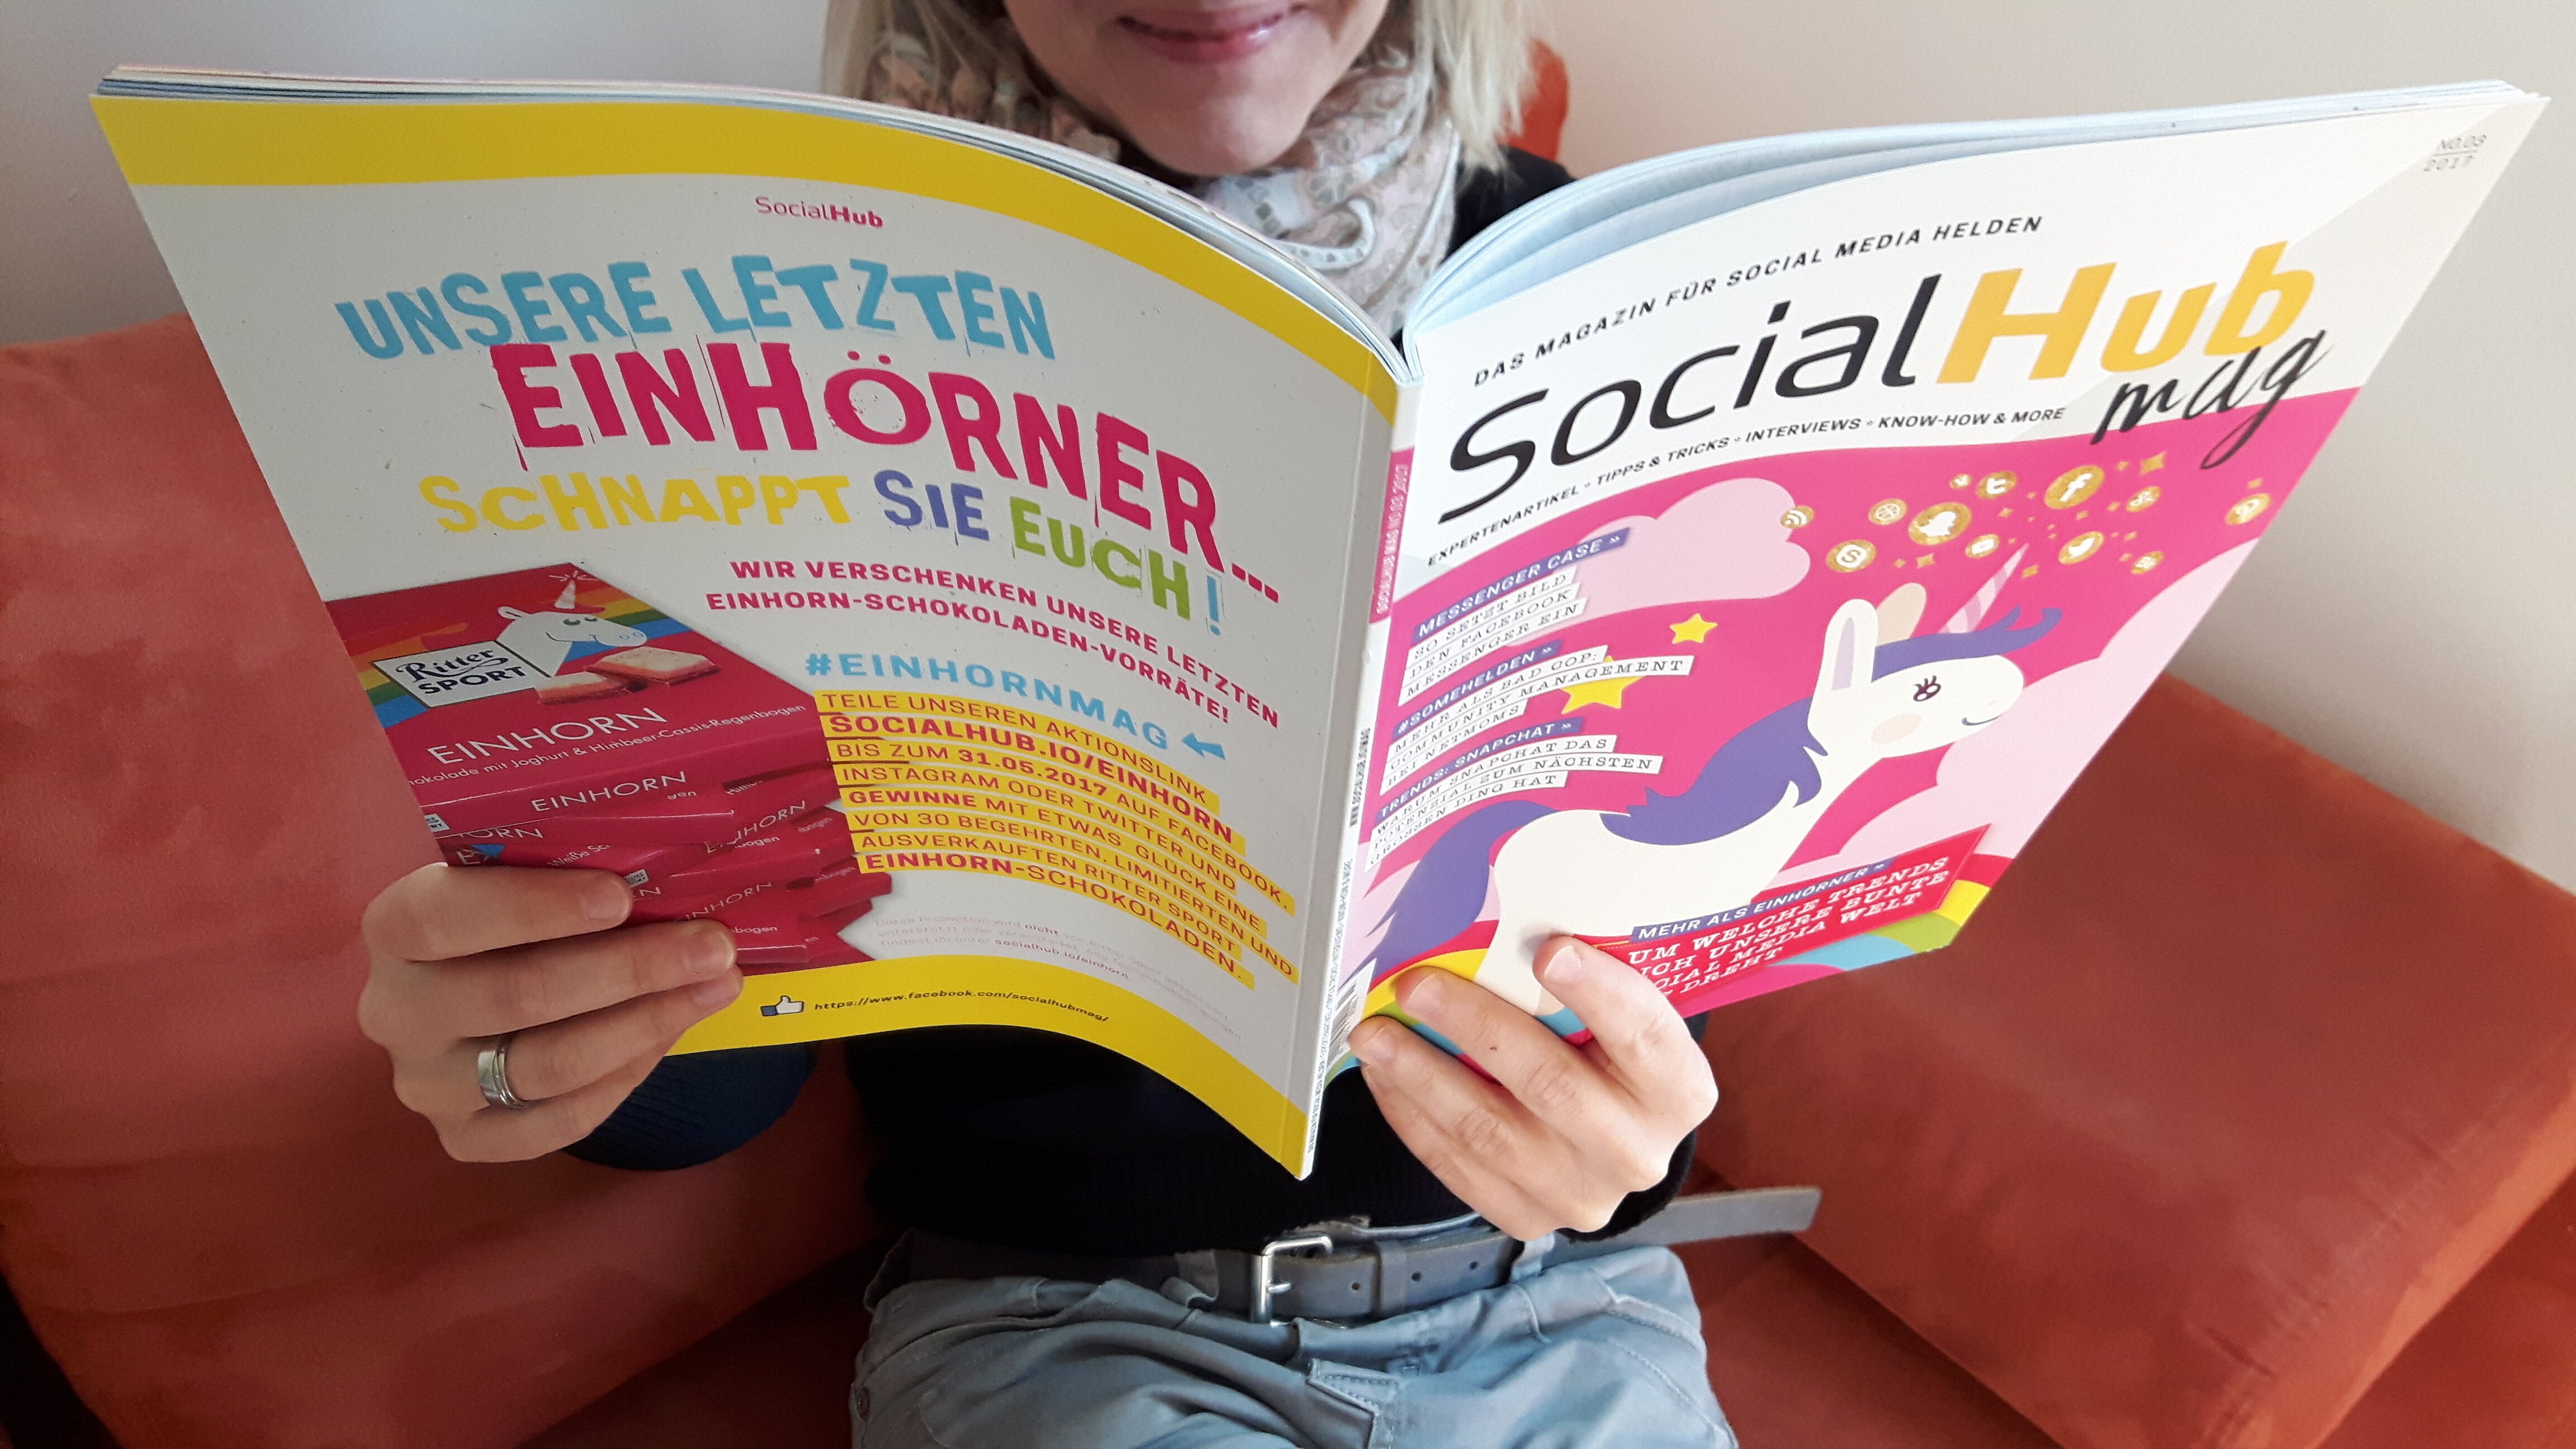 Das SocialHub Mag Nummer 3 #einhornmag